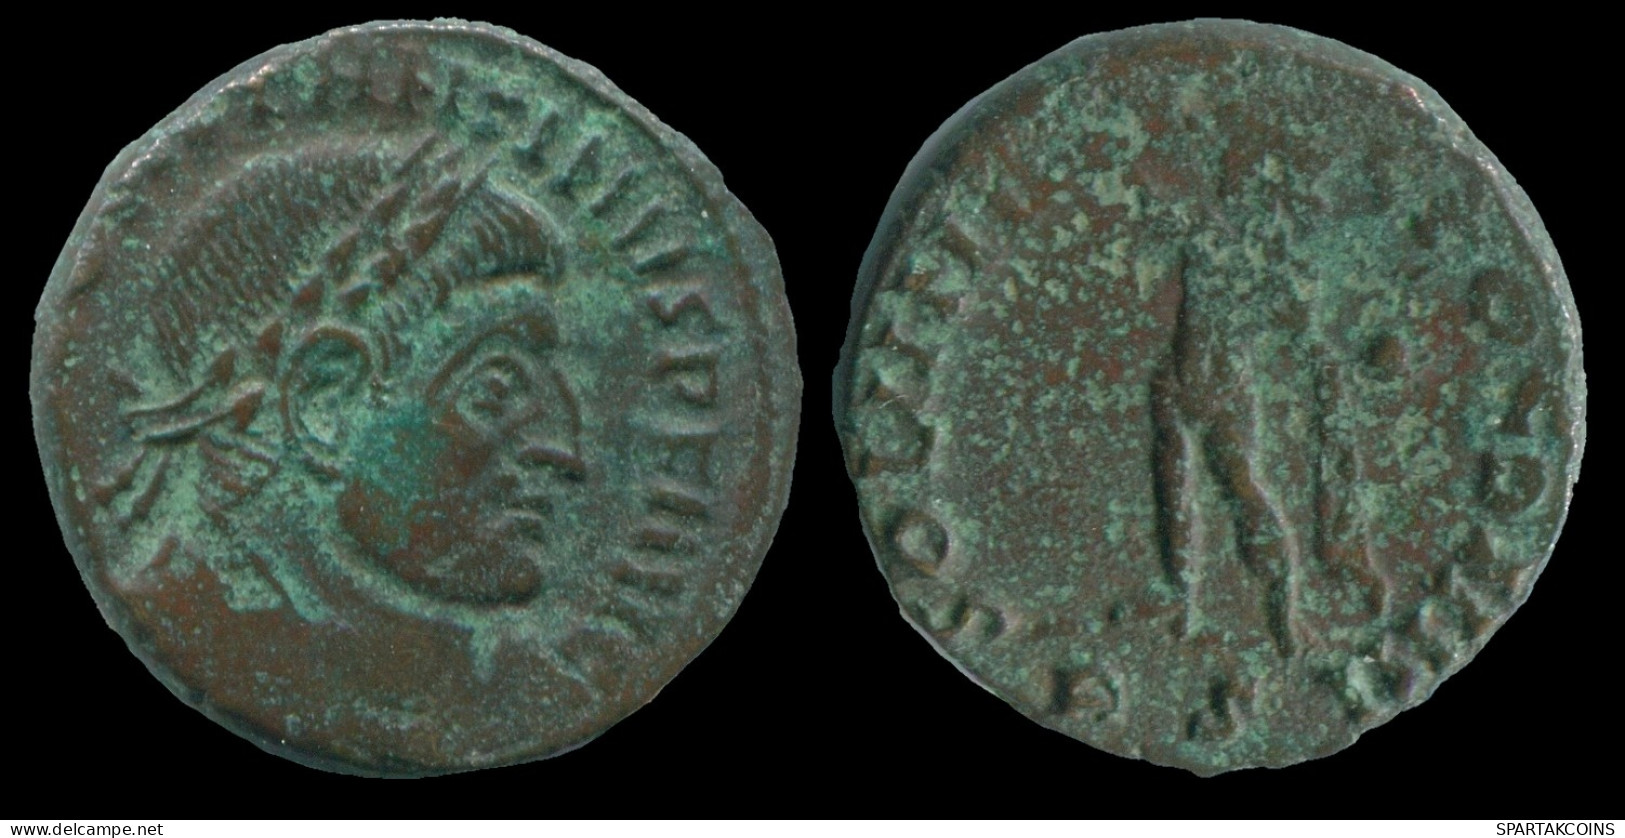 CONSTANTINE I SISCIA Mint ( S ) SOLI INVICTO COMITI SOL STANDING #ANC13230.18.E.A - The Christian Empire (307 AD To 363 AD)